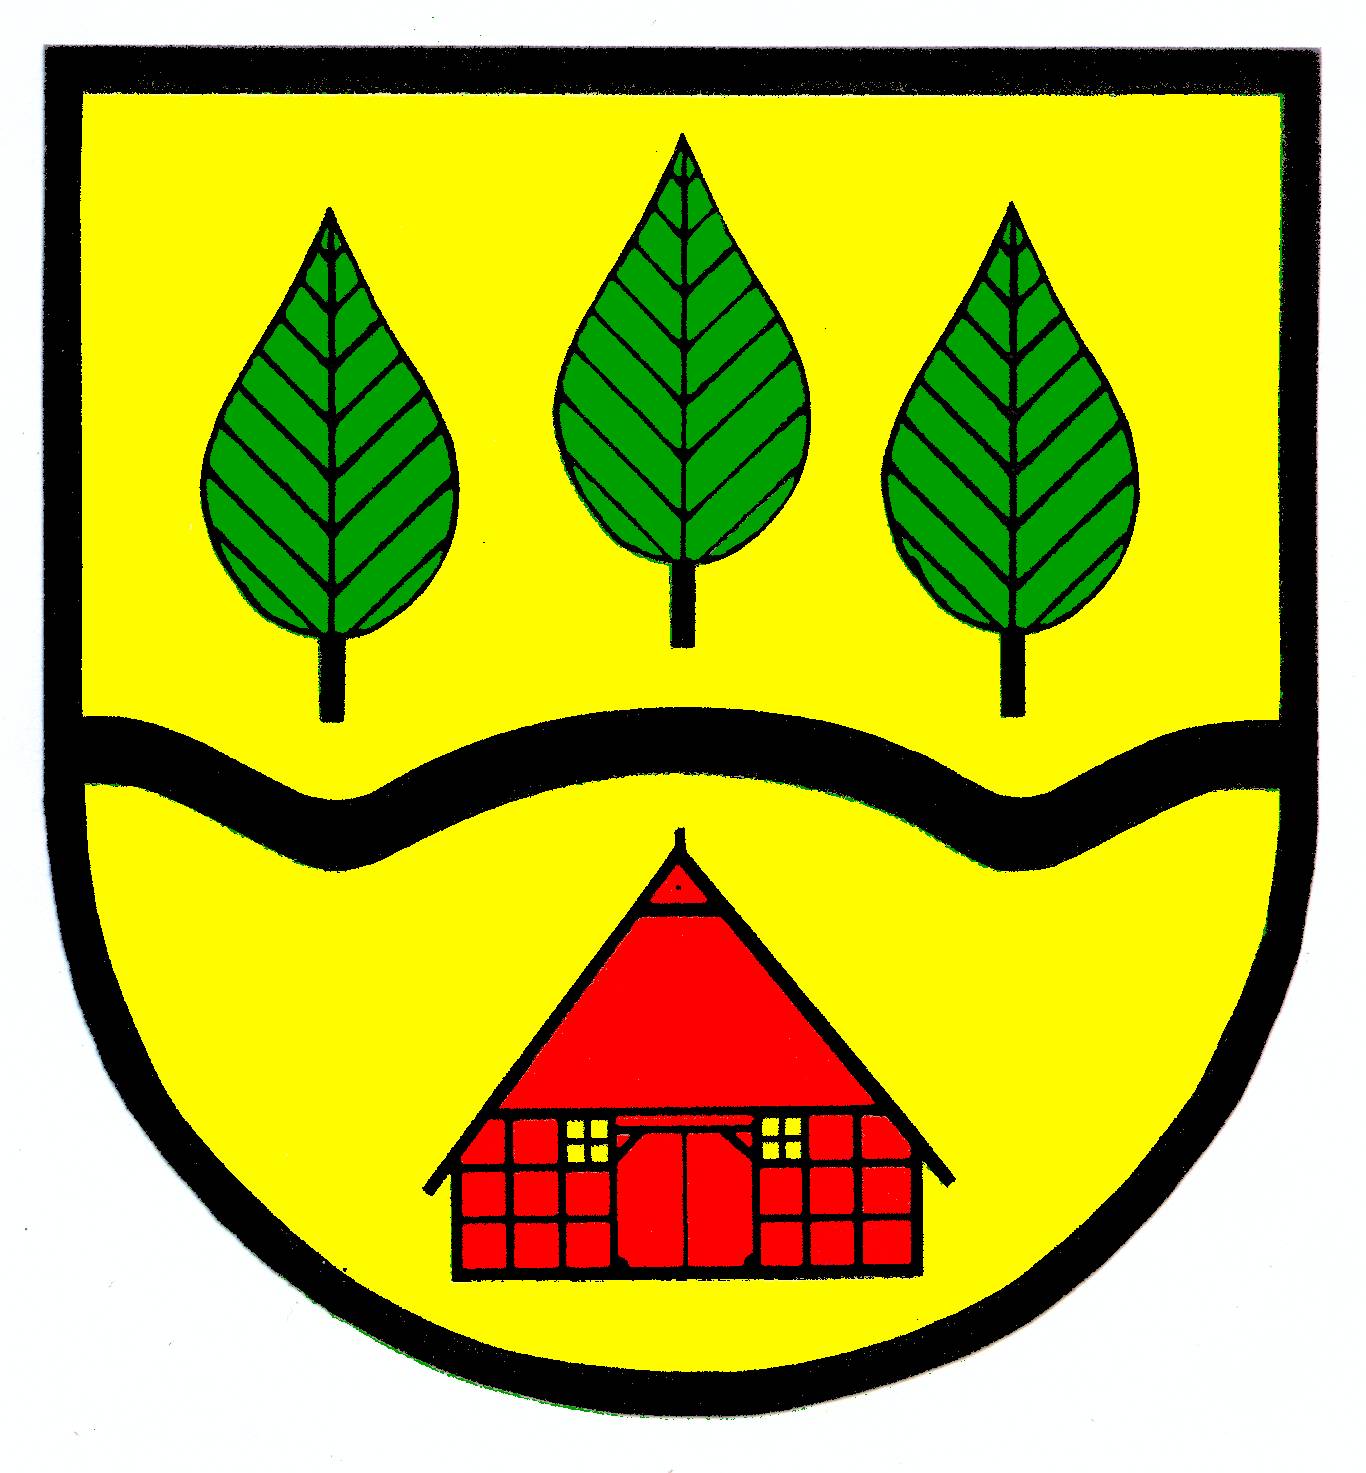 Wappen Gemeinde Grabau, Kreis Herzogtum Lauenburg